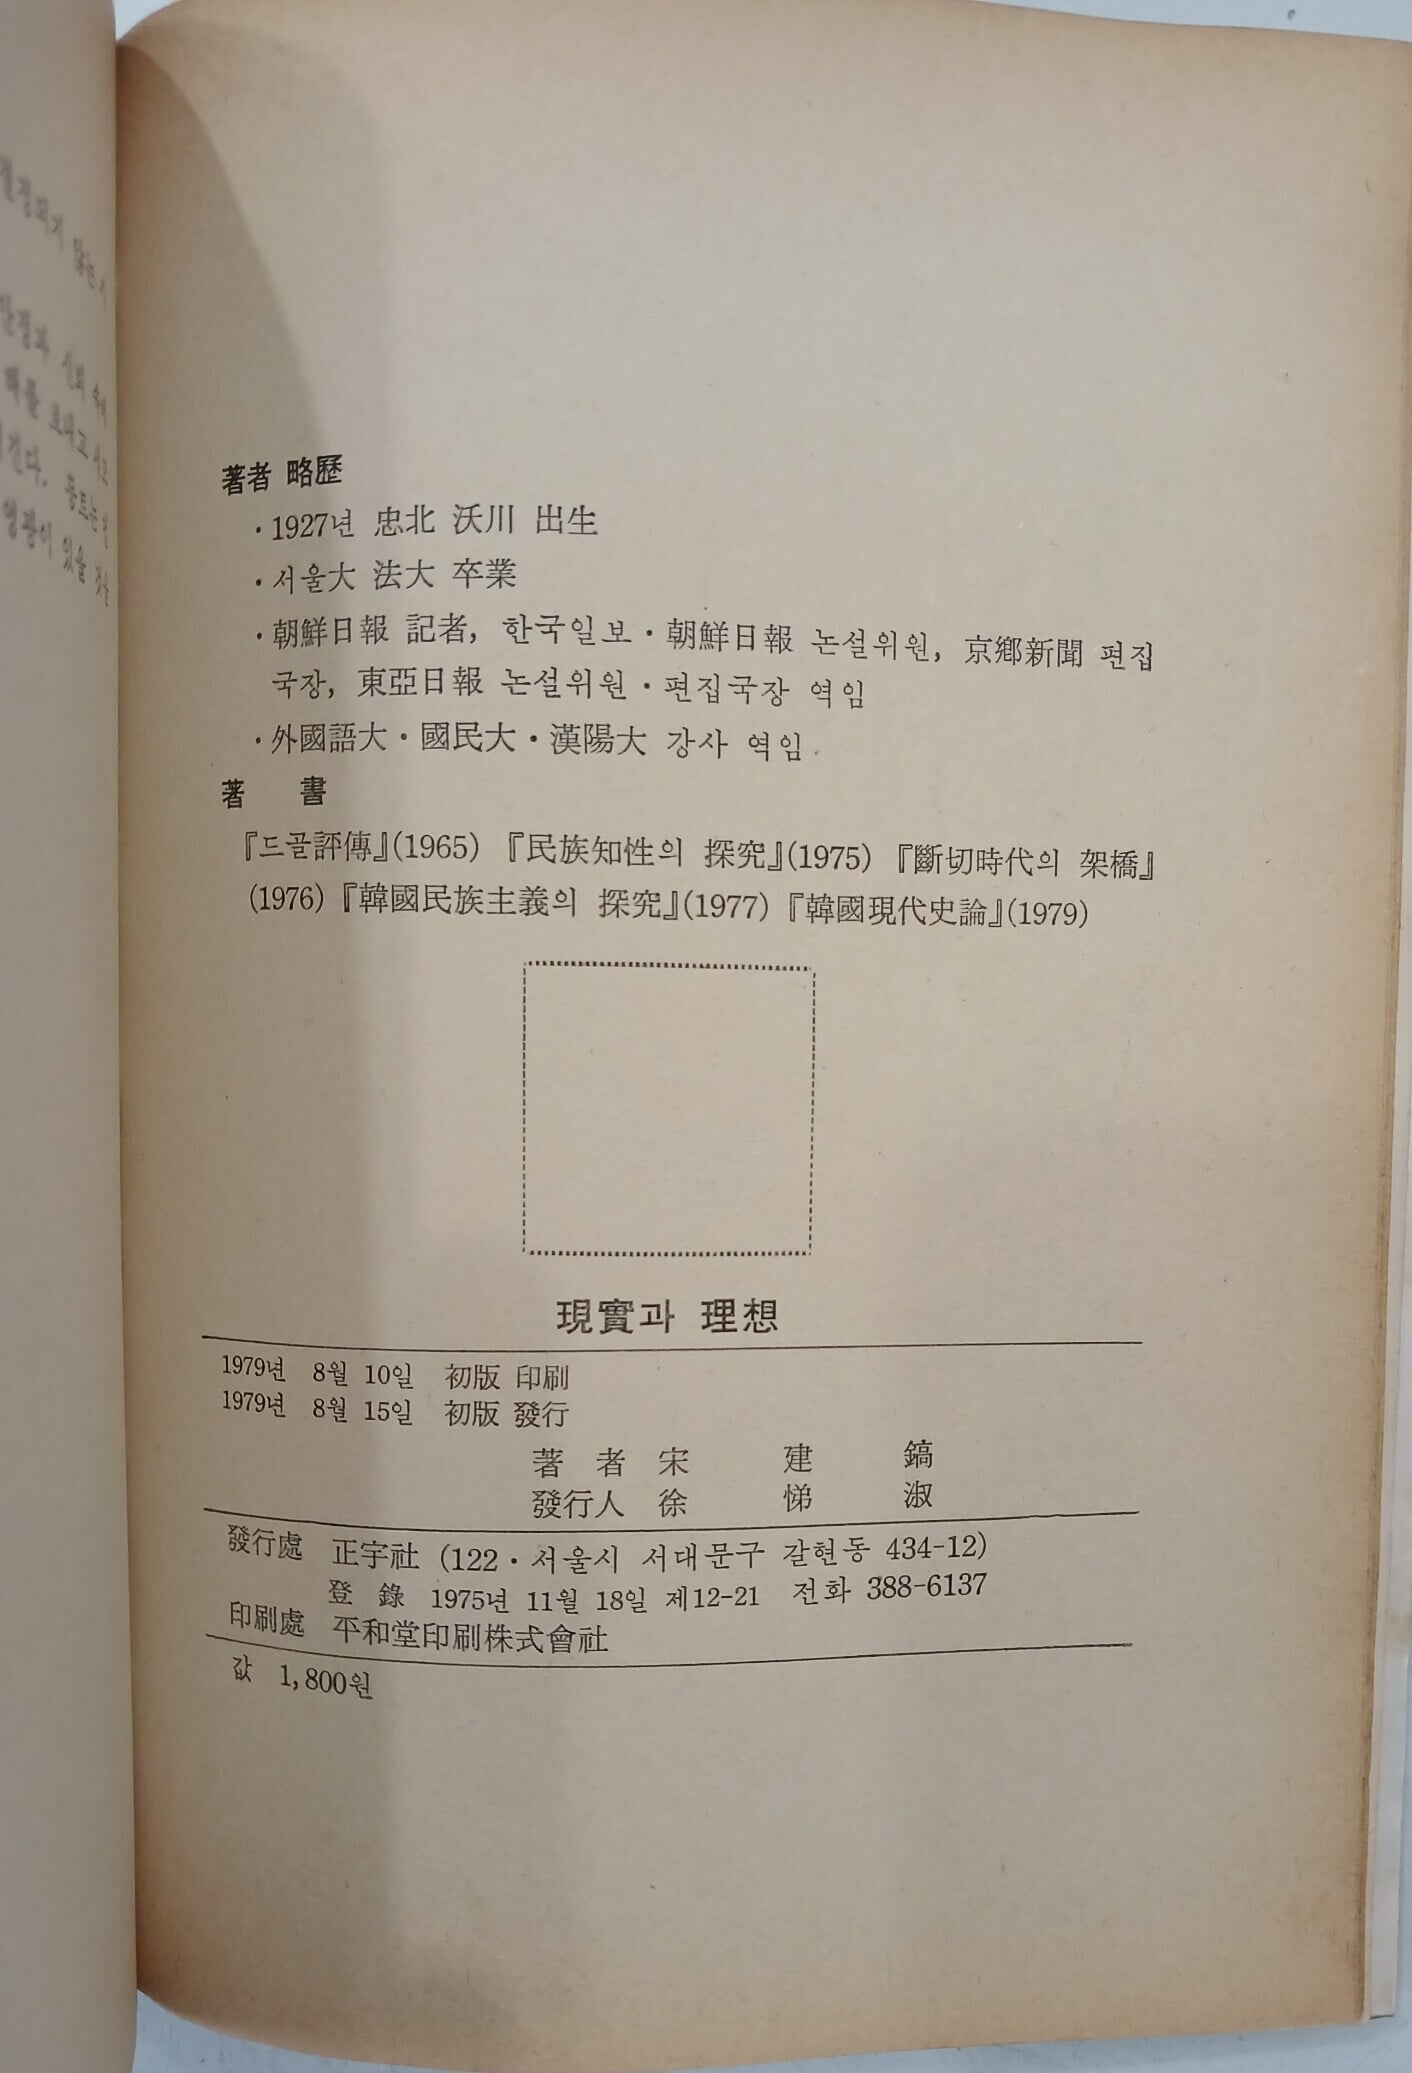 현실과 이상 - 송건호 수상 평론집 | 1979년 8월 초판